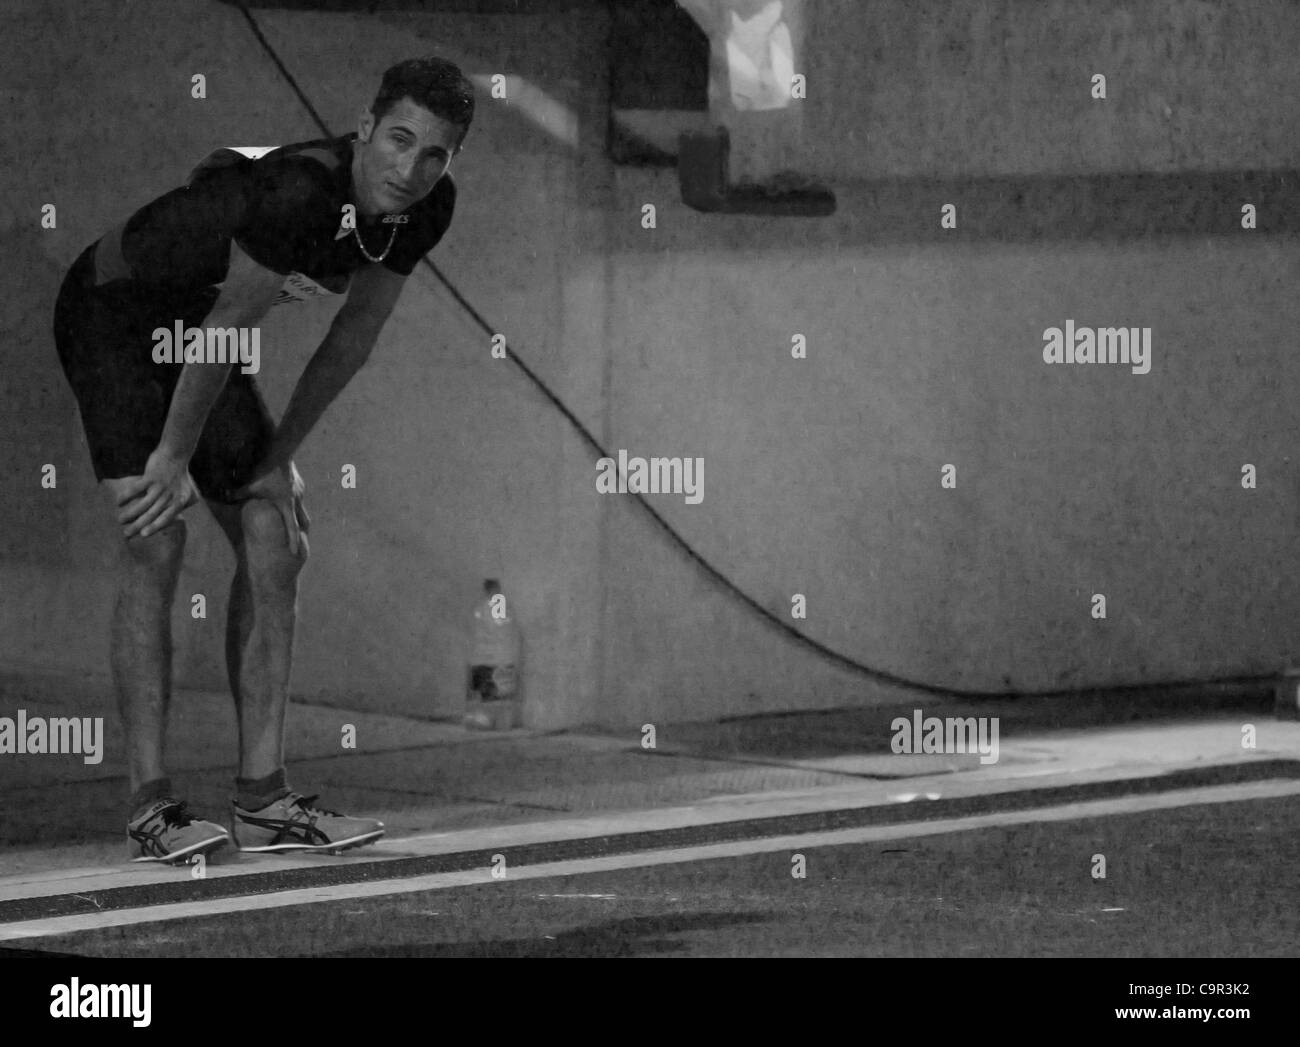 Fabrice Lappierre prende una pausa prima del suo salto successivo al 2012 perth track classic, WA Athletics Stadium Xi Febbraio 2012 Foto Stock